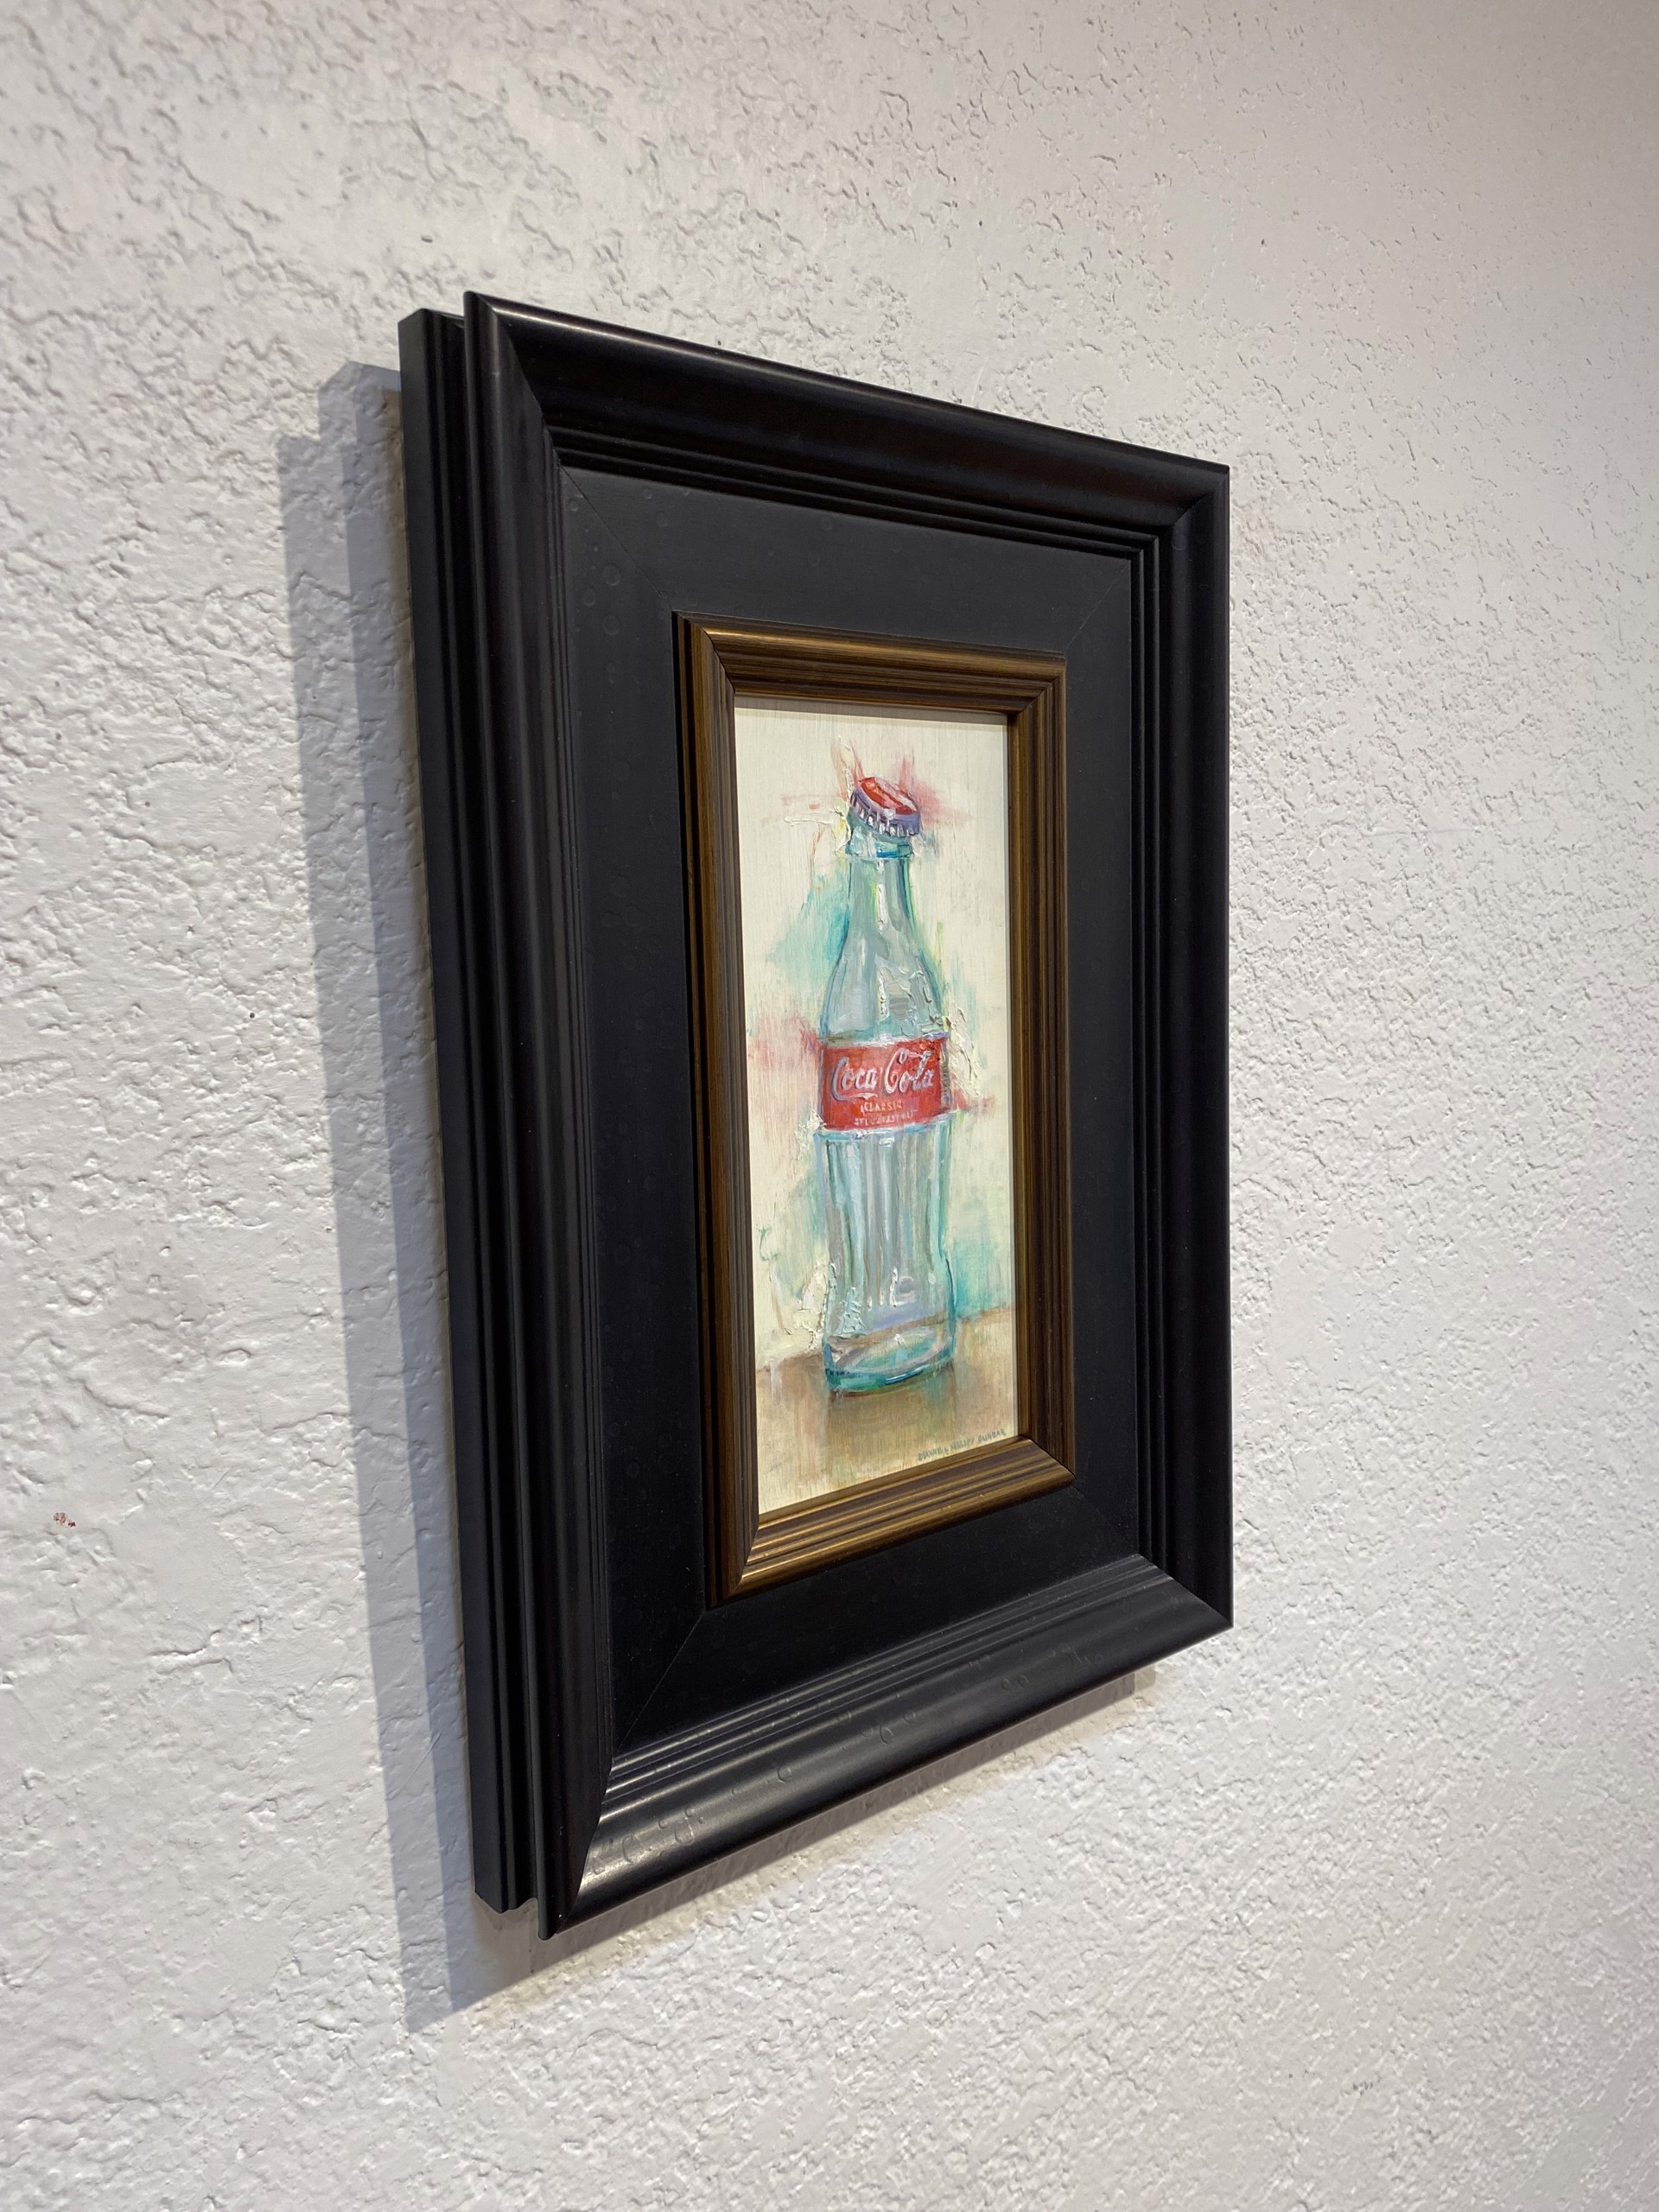 Coke Bottle by Dianne L Massey Dunbar